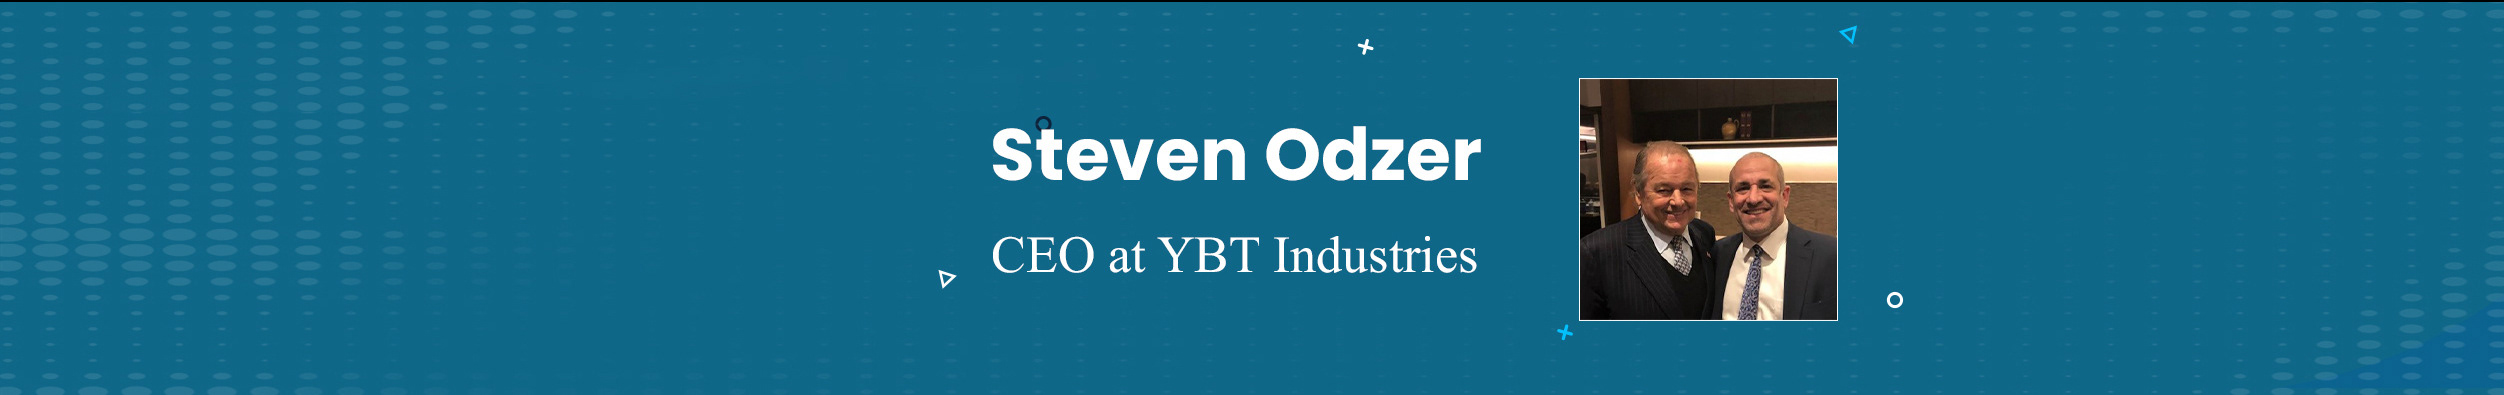 Steven Odzer's profile banner